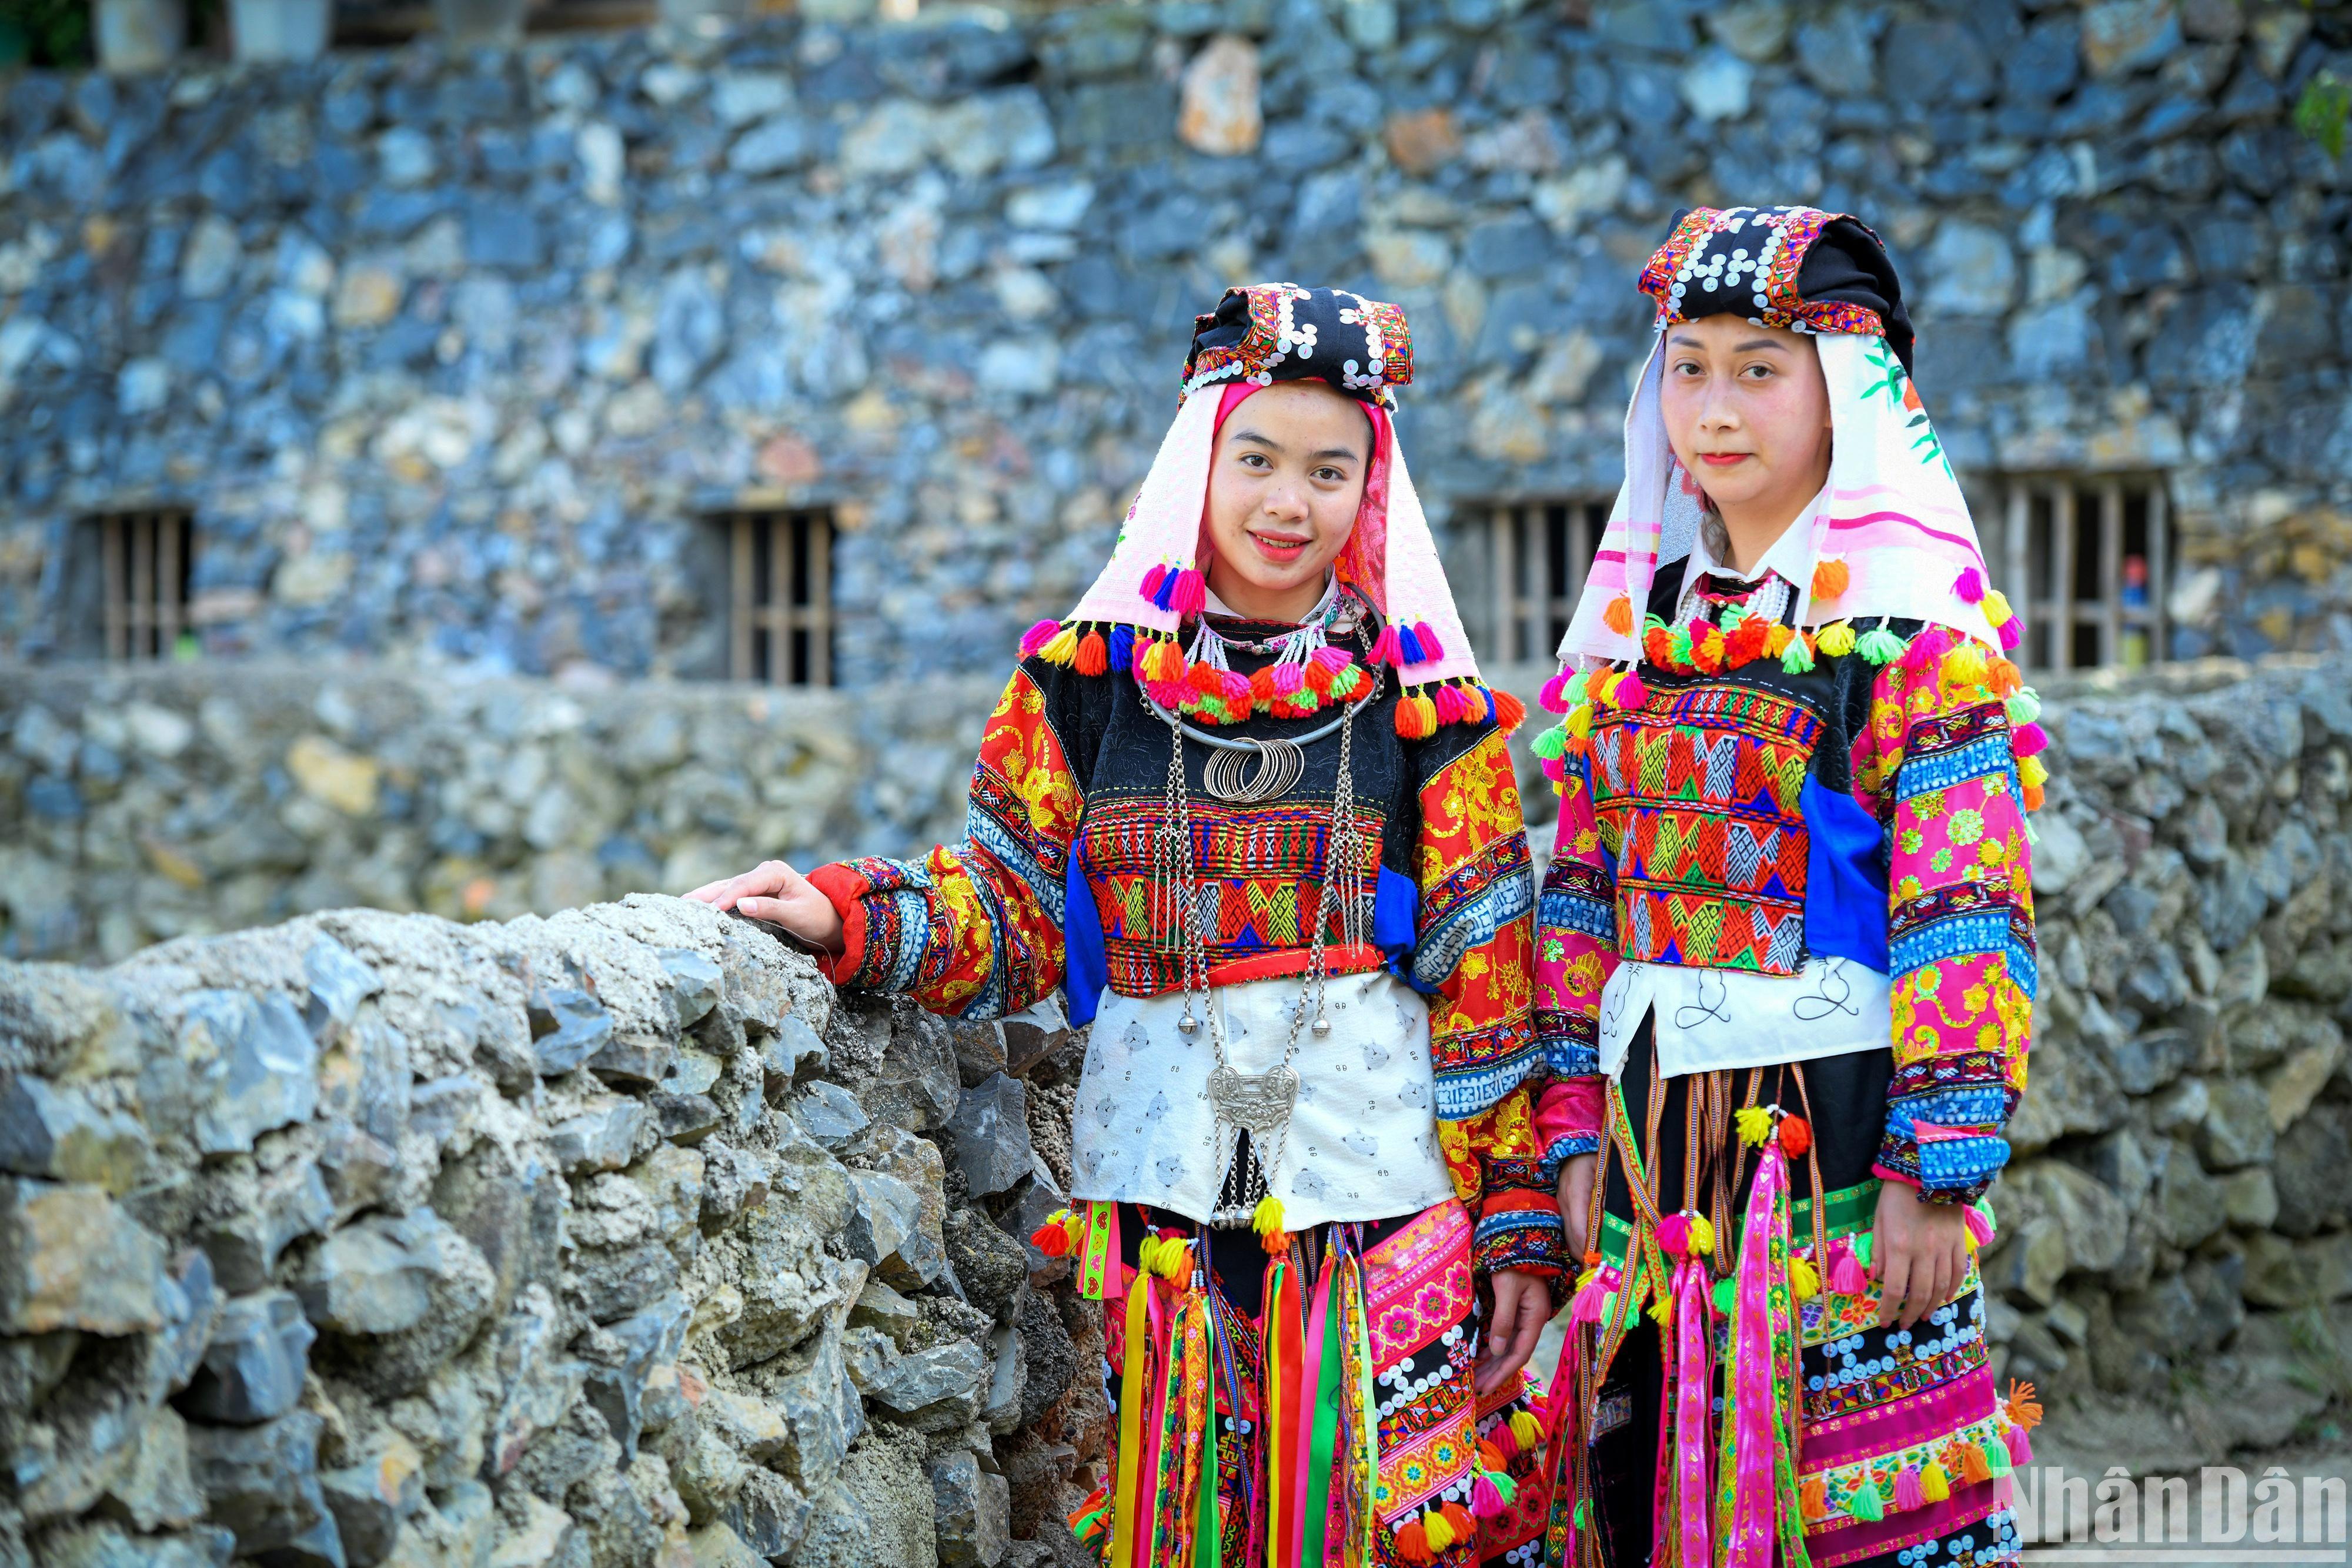 Trang phục dân tộc Lô Lô không chỉ là biểu tượng của sự độc đáo và đa dạng văn hóa Việt Nam mà còn là một nét đẹp văn hóa đặc trưng của dân tộc Lô Lô. Hãy cùng ngắm nhìn những bộ trang phục đầy màu sắc và tinh tế trong ảnh để hiểu thêm về nếp sống và truyền thống của những người con dân tộc này.